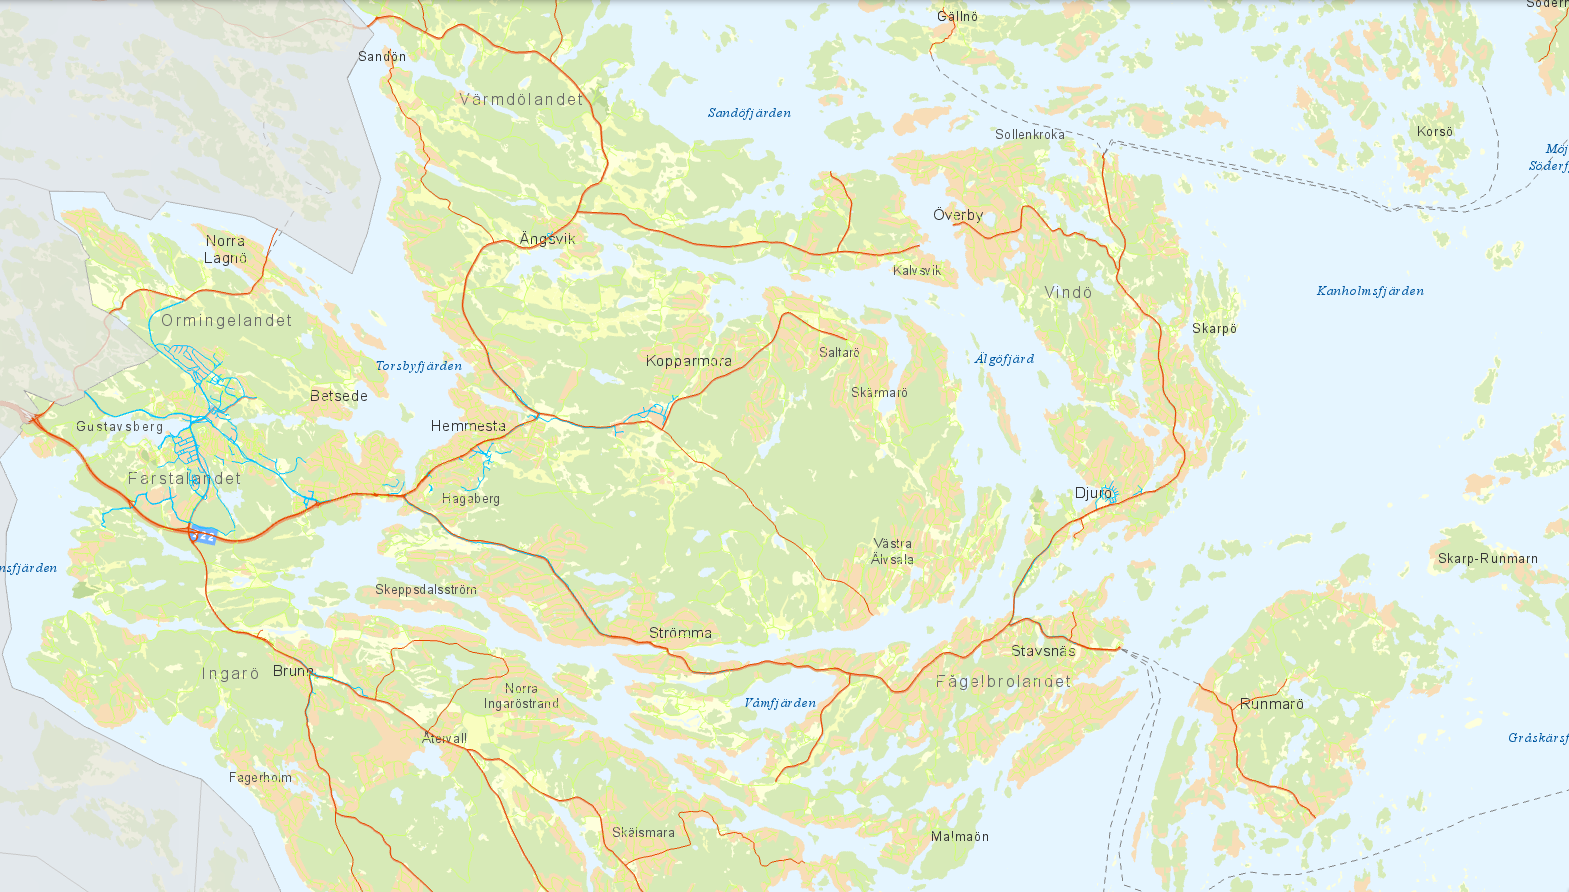 Kartan visar vägar i Värmdö och huvudmannaskapet. Cykelvägarna är kommunens, medan bilvägarna delas mellan stat, kommun och enskilda föreningar. Länken går till en interaktiv karta.